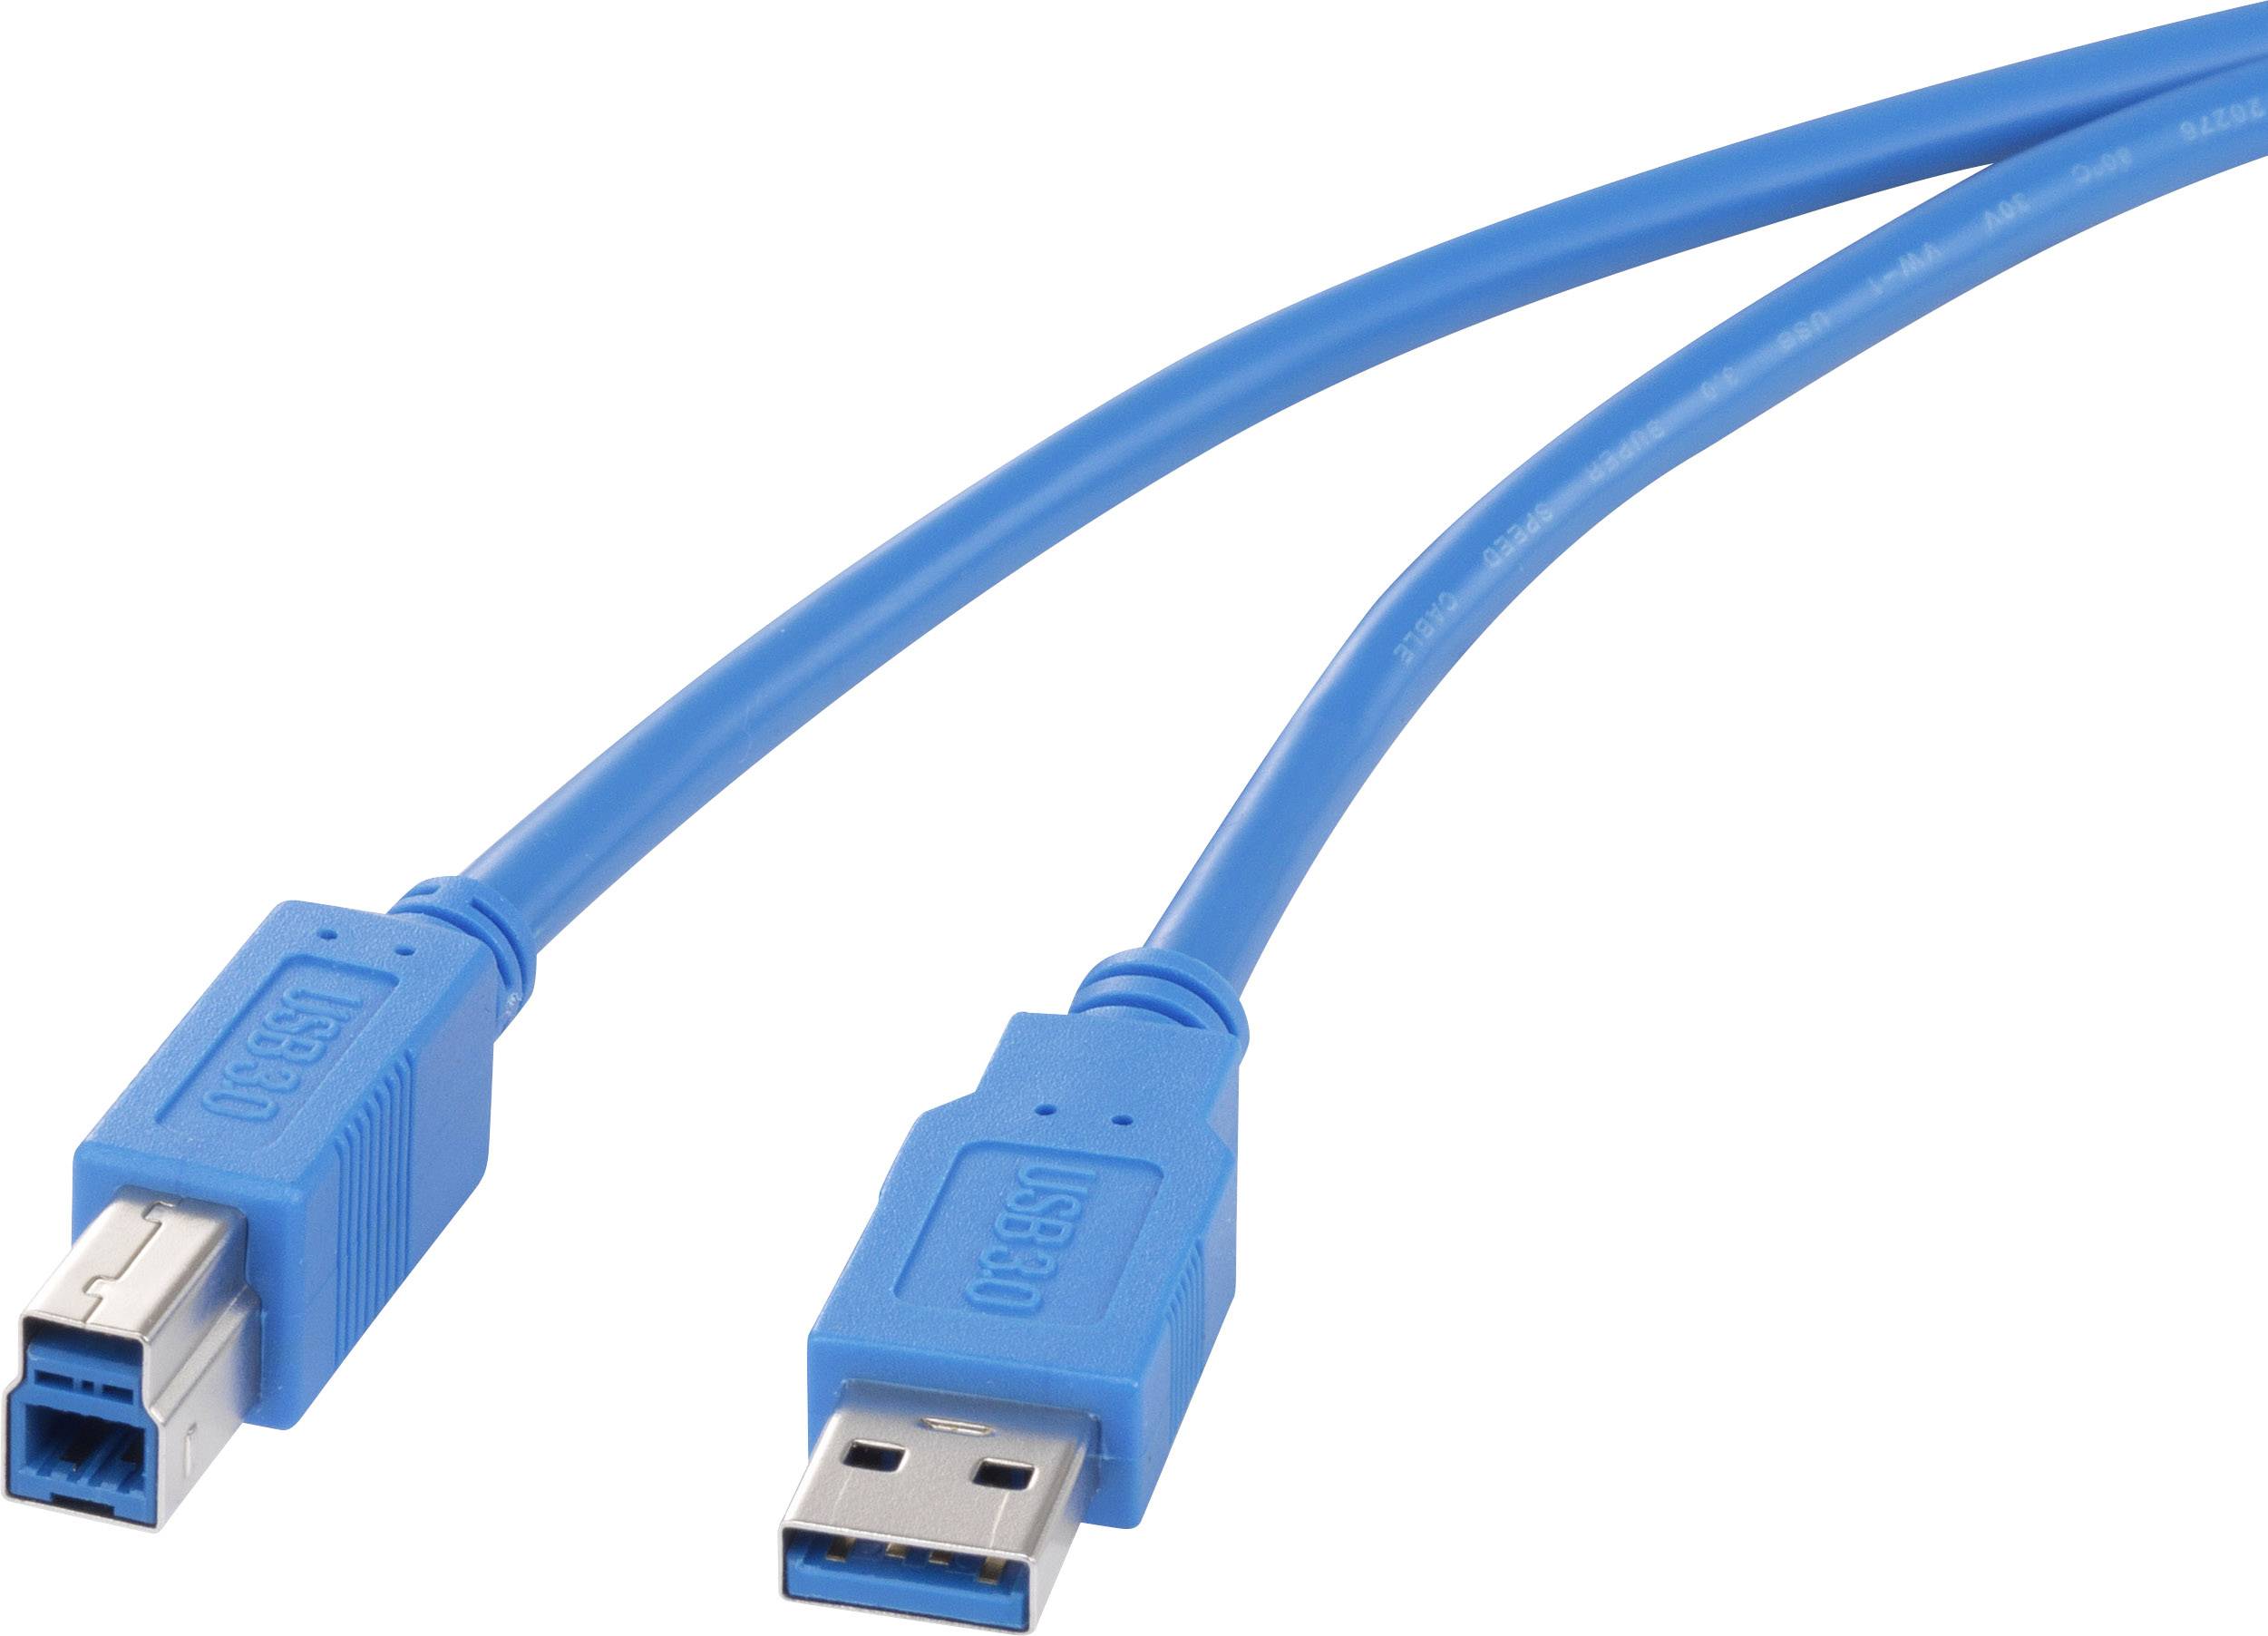 CONRAD Renkforce USB 3.0 Kabel [1x USB 3.0 Stecker A - 1x USB 3.0 Stecker B] 0.5 m Blau vergoldete S